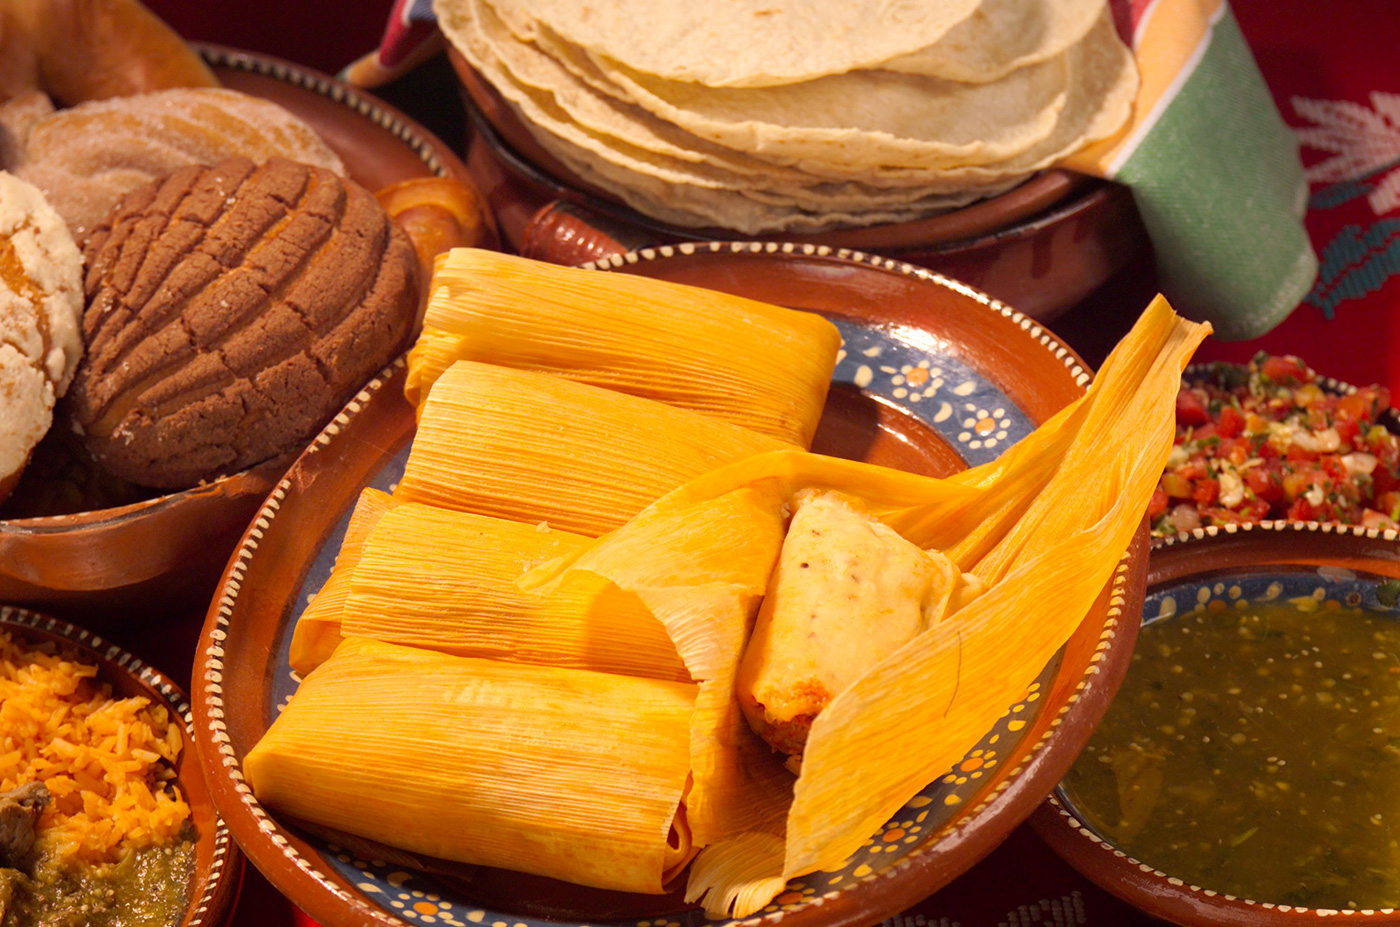 Estamos emocionados de ofrecer nuestra deliciosa y auténtica cocina mexicana para su próximo evento.